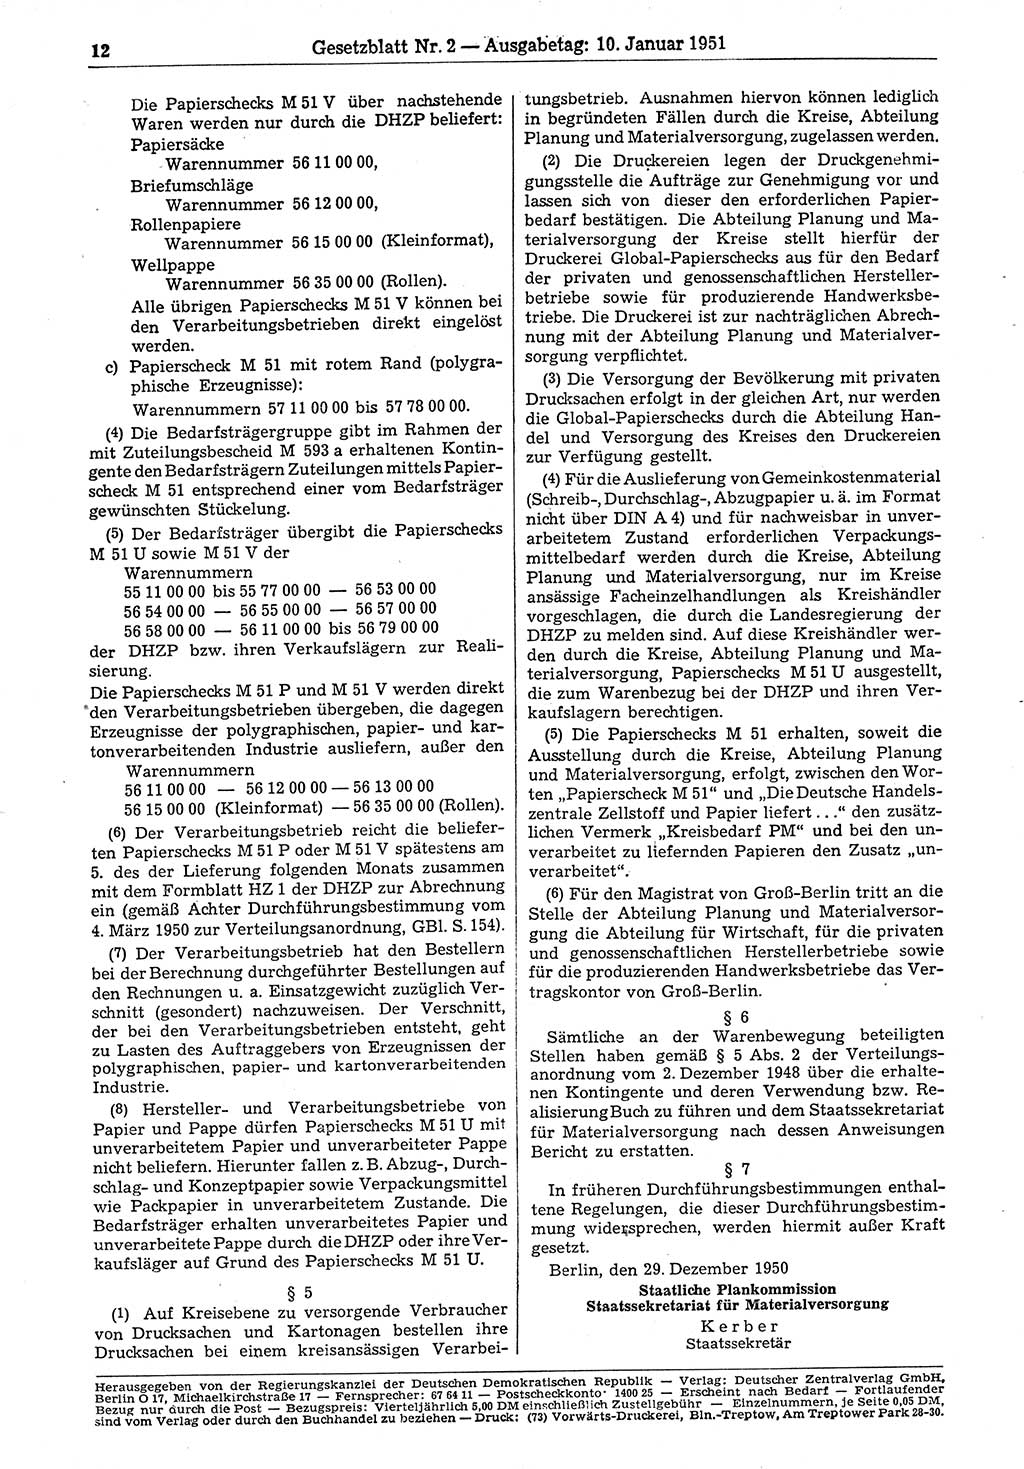 Gesetzblatt (GBl.) der Deutschen Demokratischen Republik (DDR) 1951, Seite 12 (GBl. DDR 1951, S. 12)